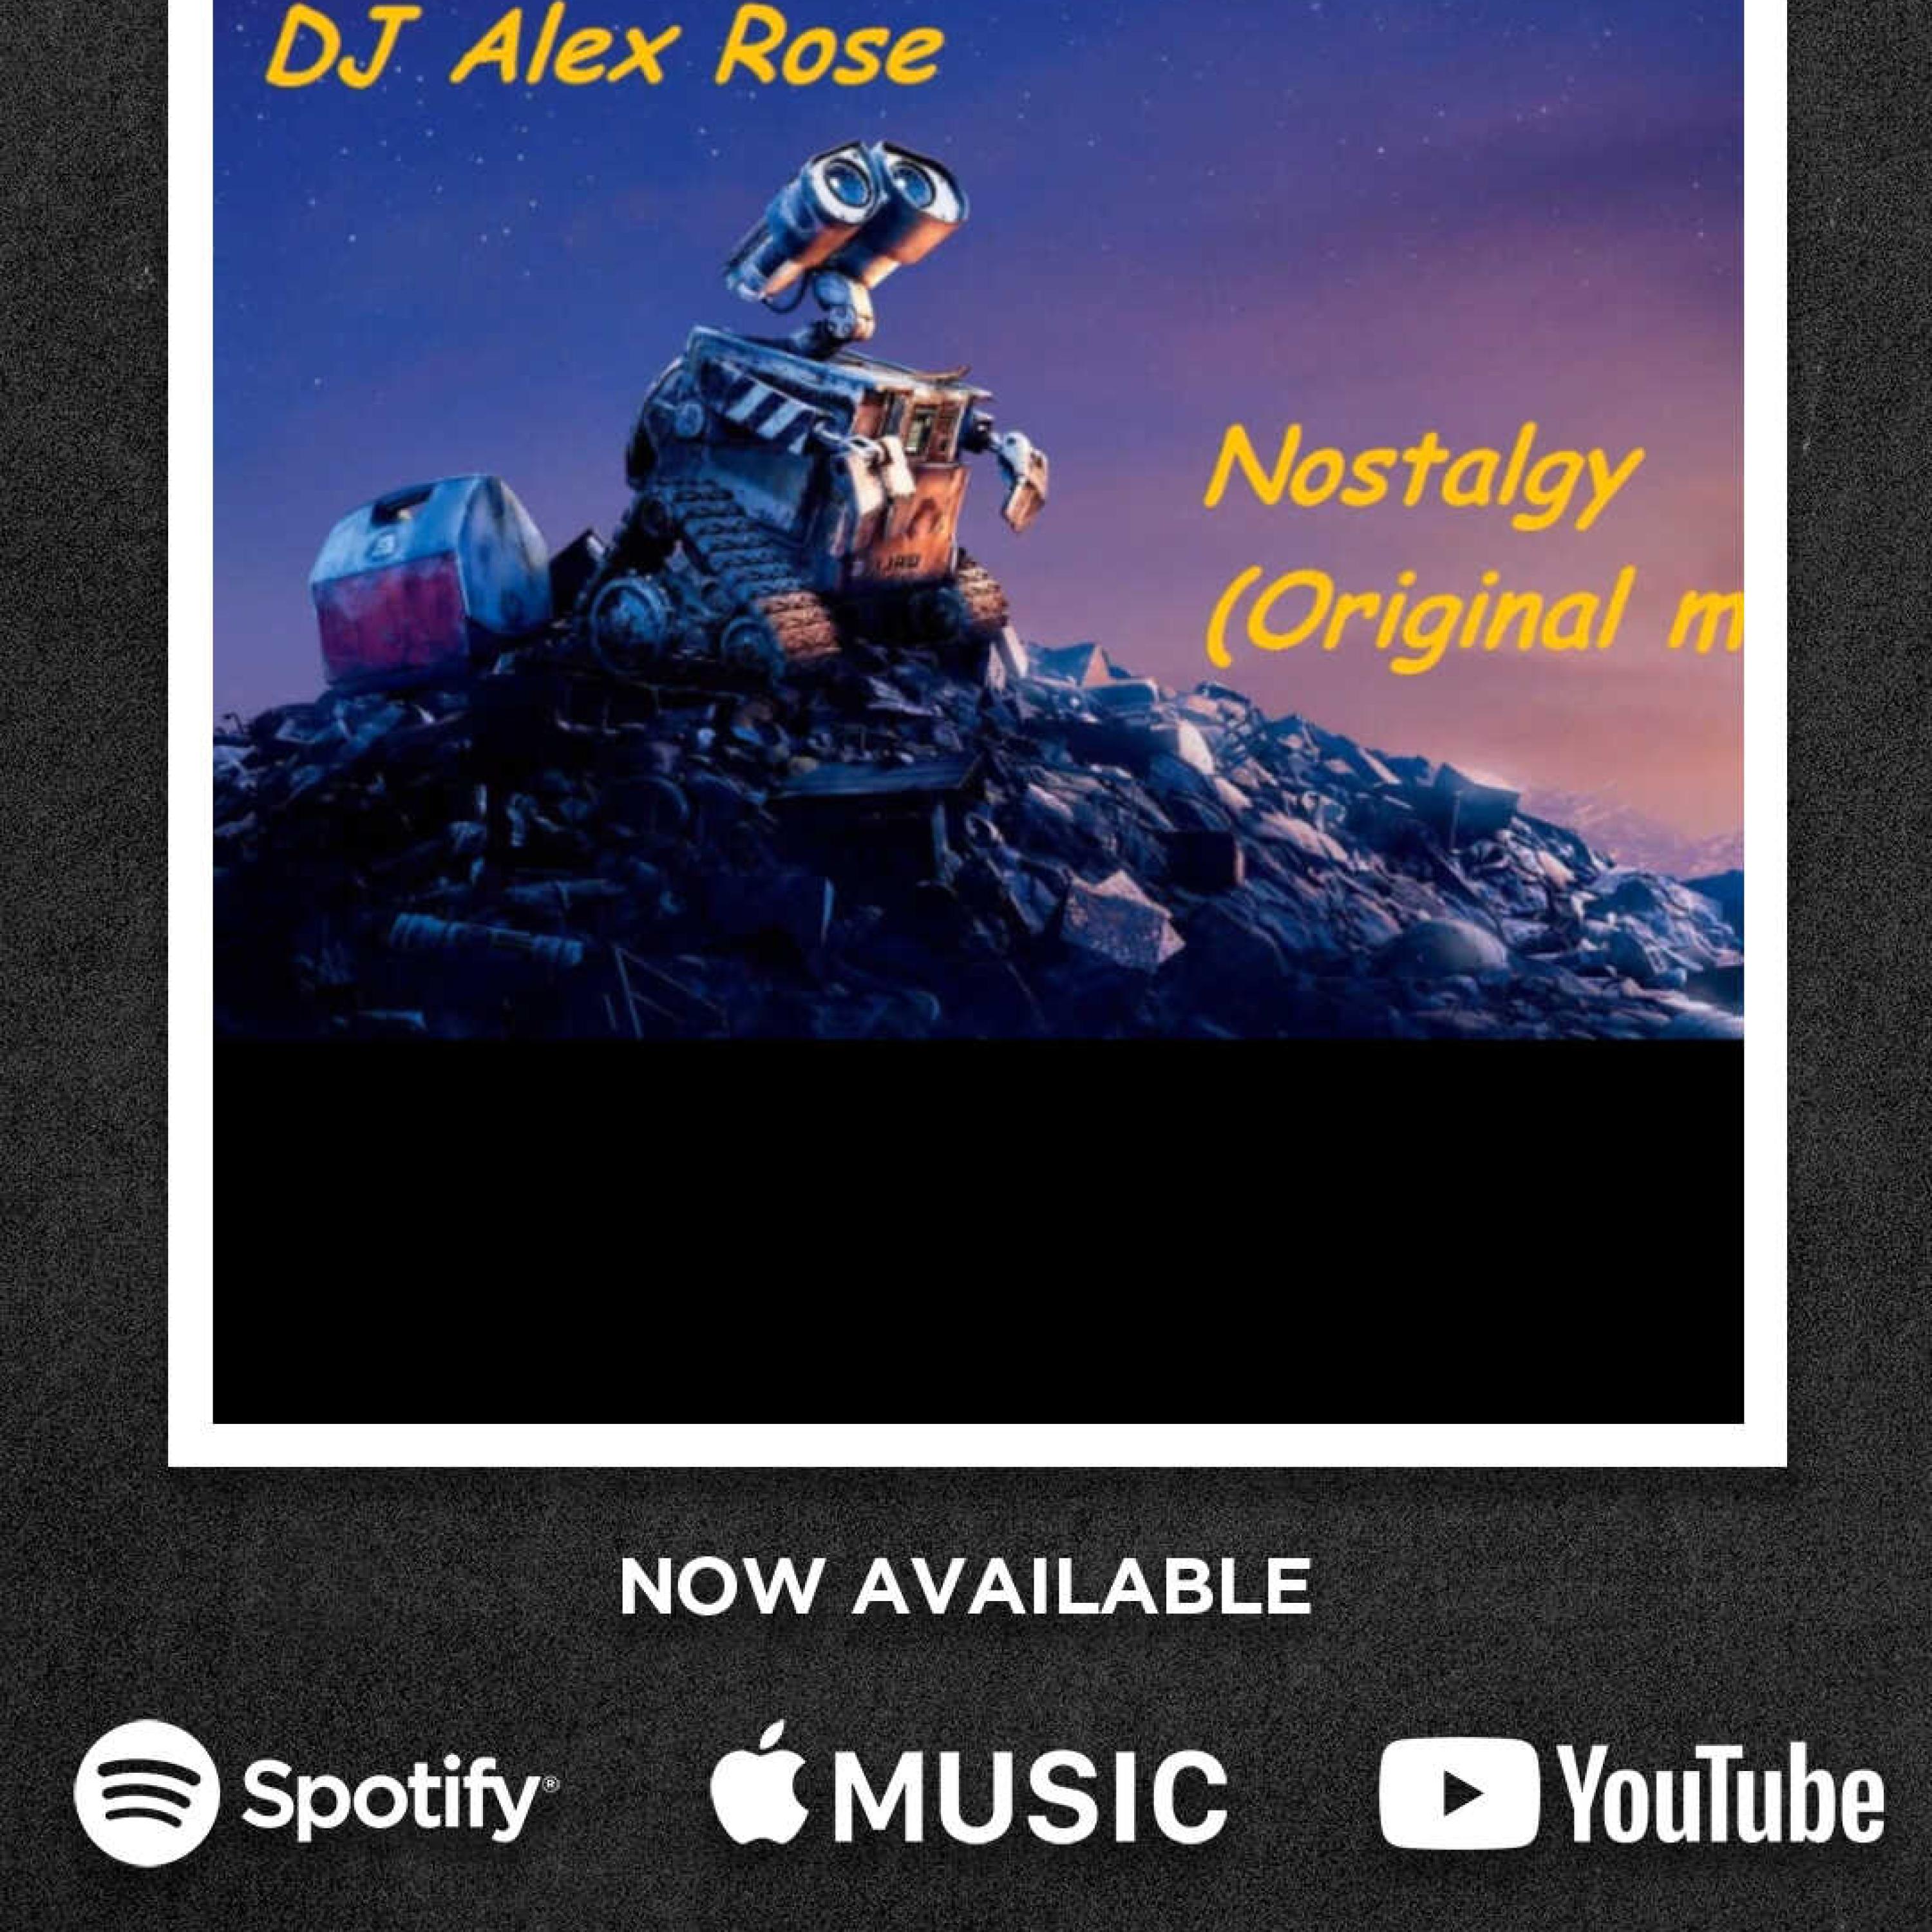 DJ Alex Rose - Nostalgy